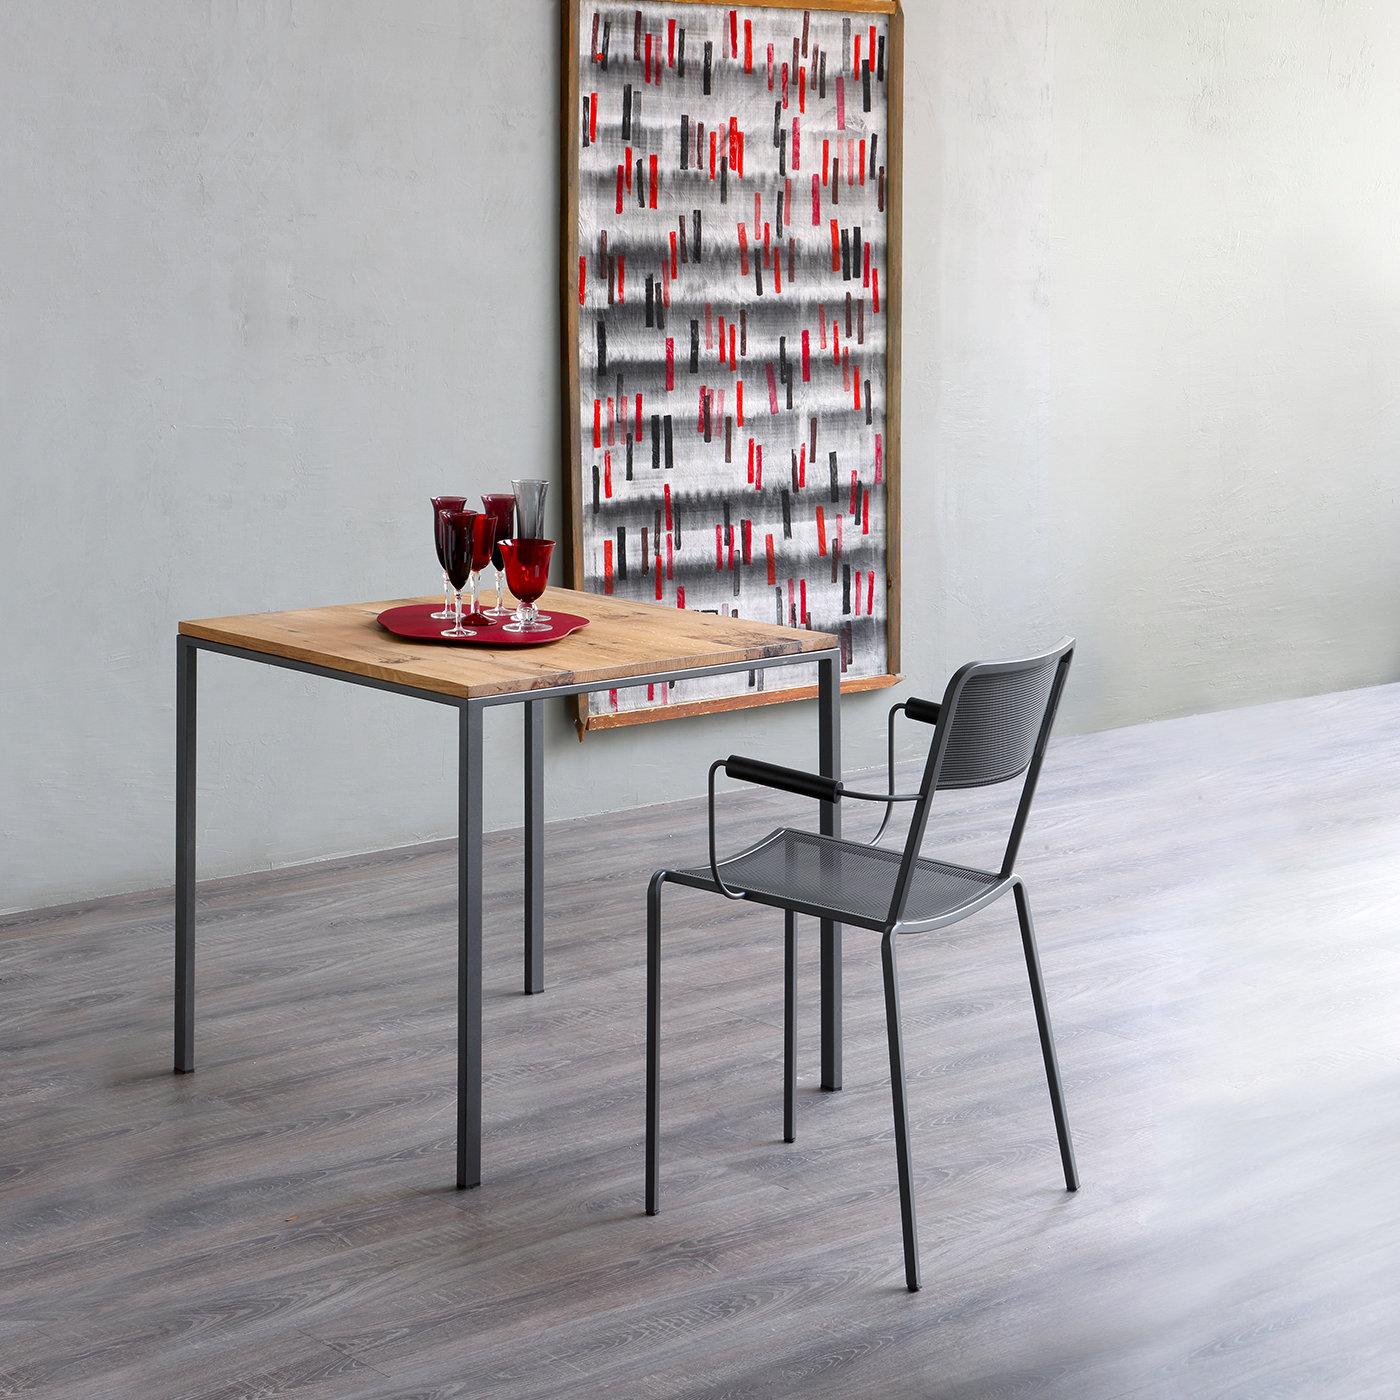 Fabriquée à partir de matériaux et de finitions modernes, la table d'appoint Mini Tavolo repose sur une base en métal texturé à revêtement en poudre et est recouverte d'un stratifié haute pression avec une finition rouille fraîche. Cette table